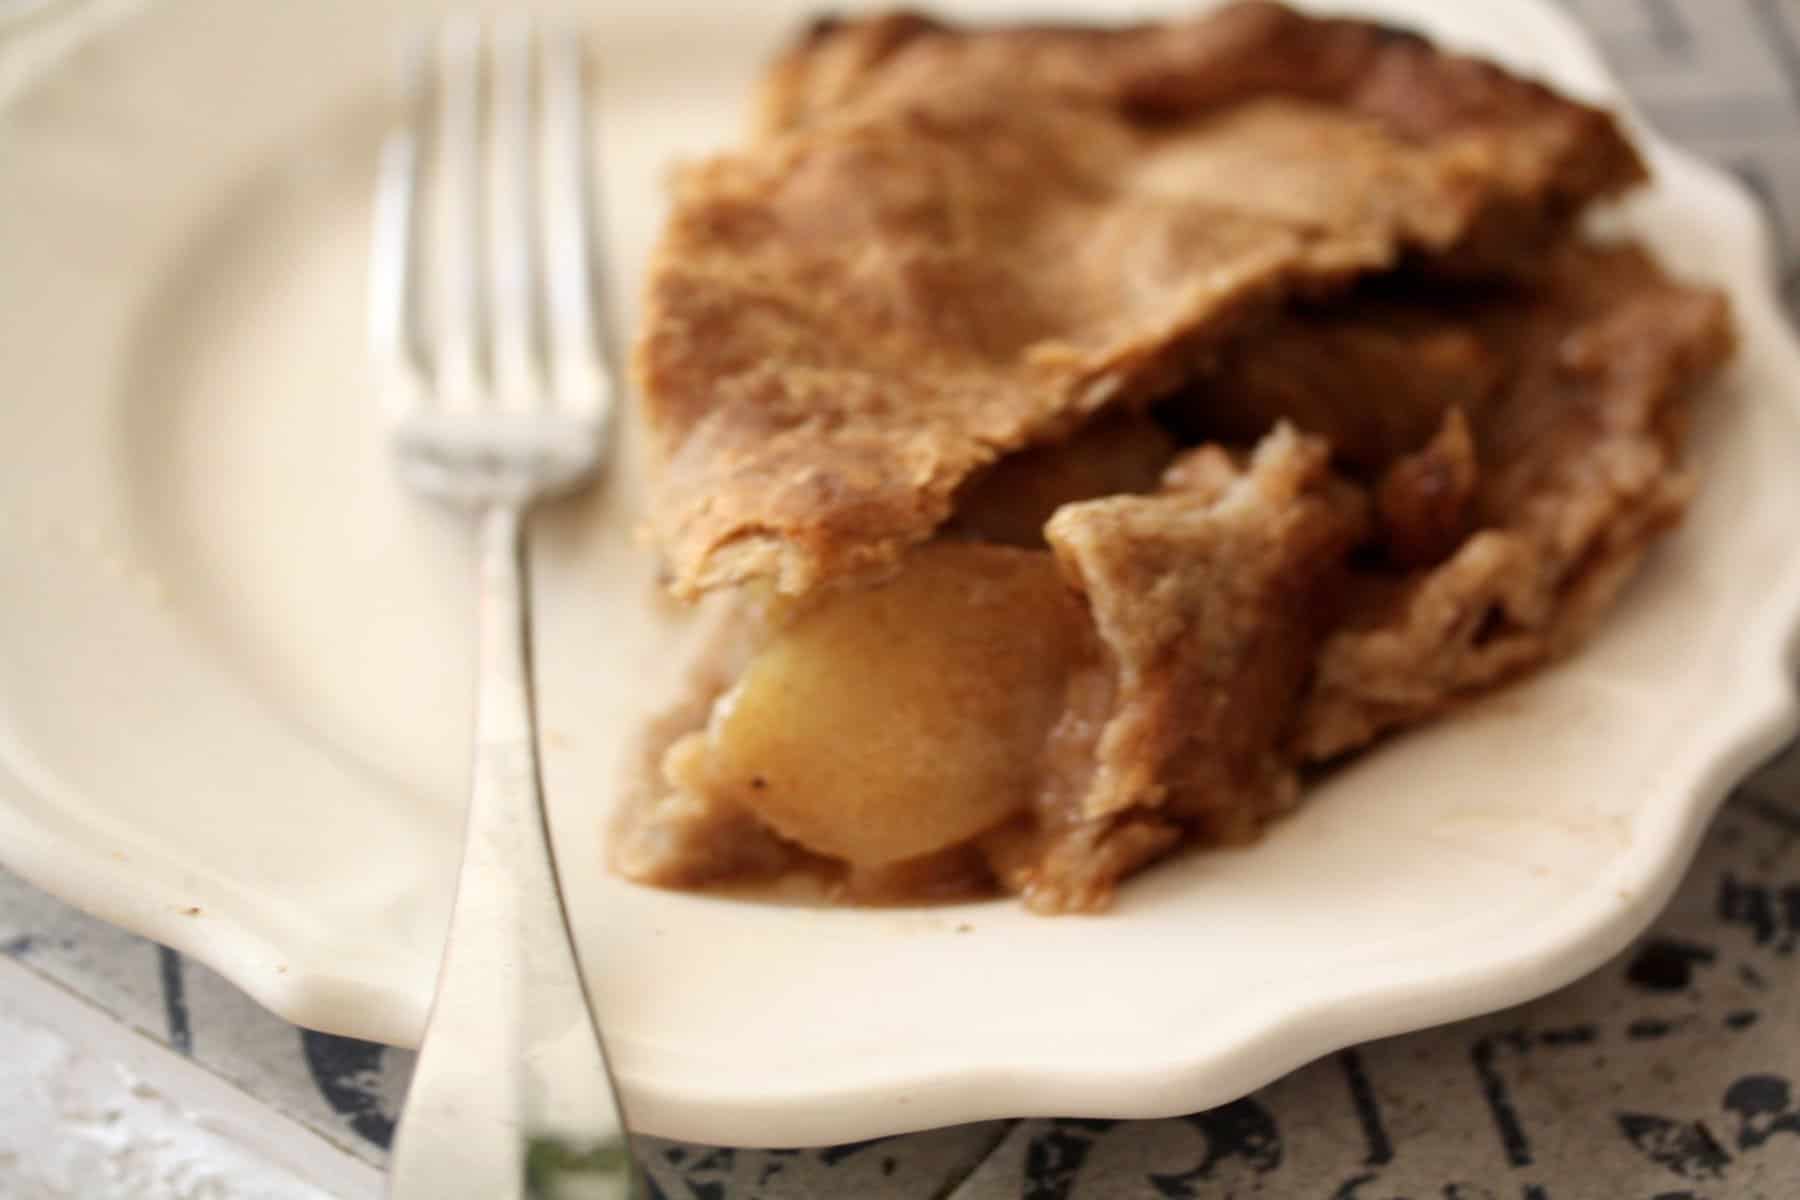 Gravenstein apple pie